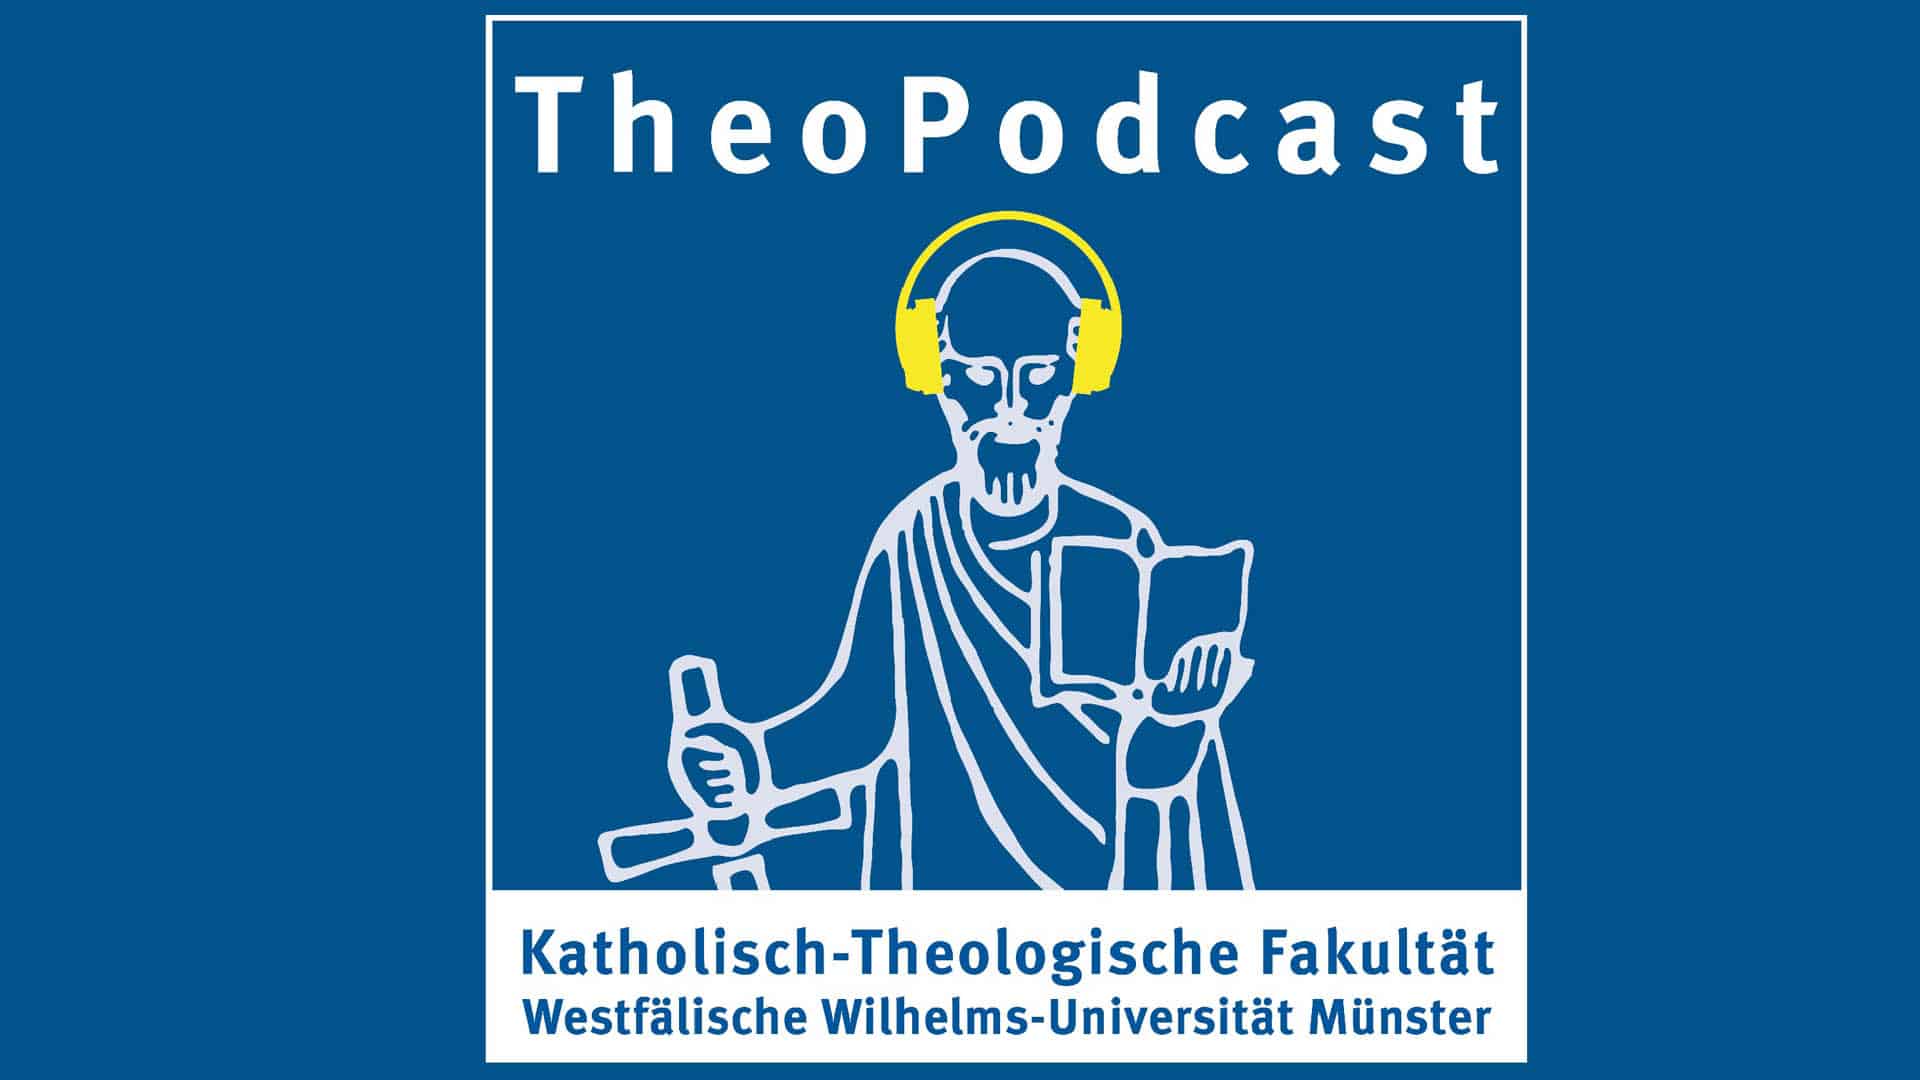 Startet am Mittwoch, dem 22. Januar: Der Podcast der Katholisch-Theologischen Fakultät der Universität Münster